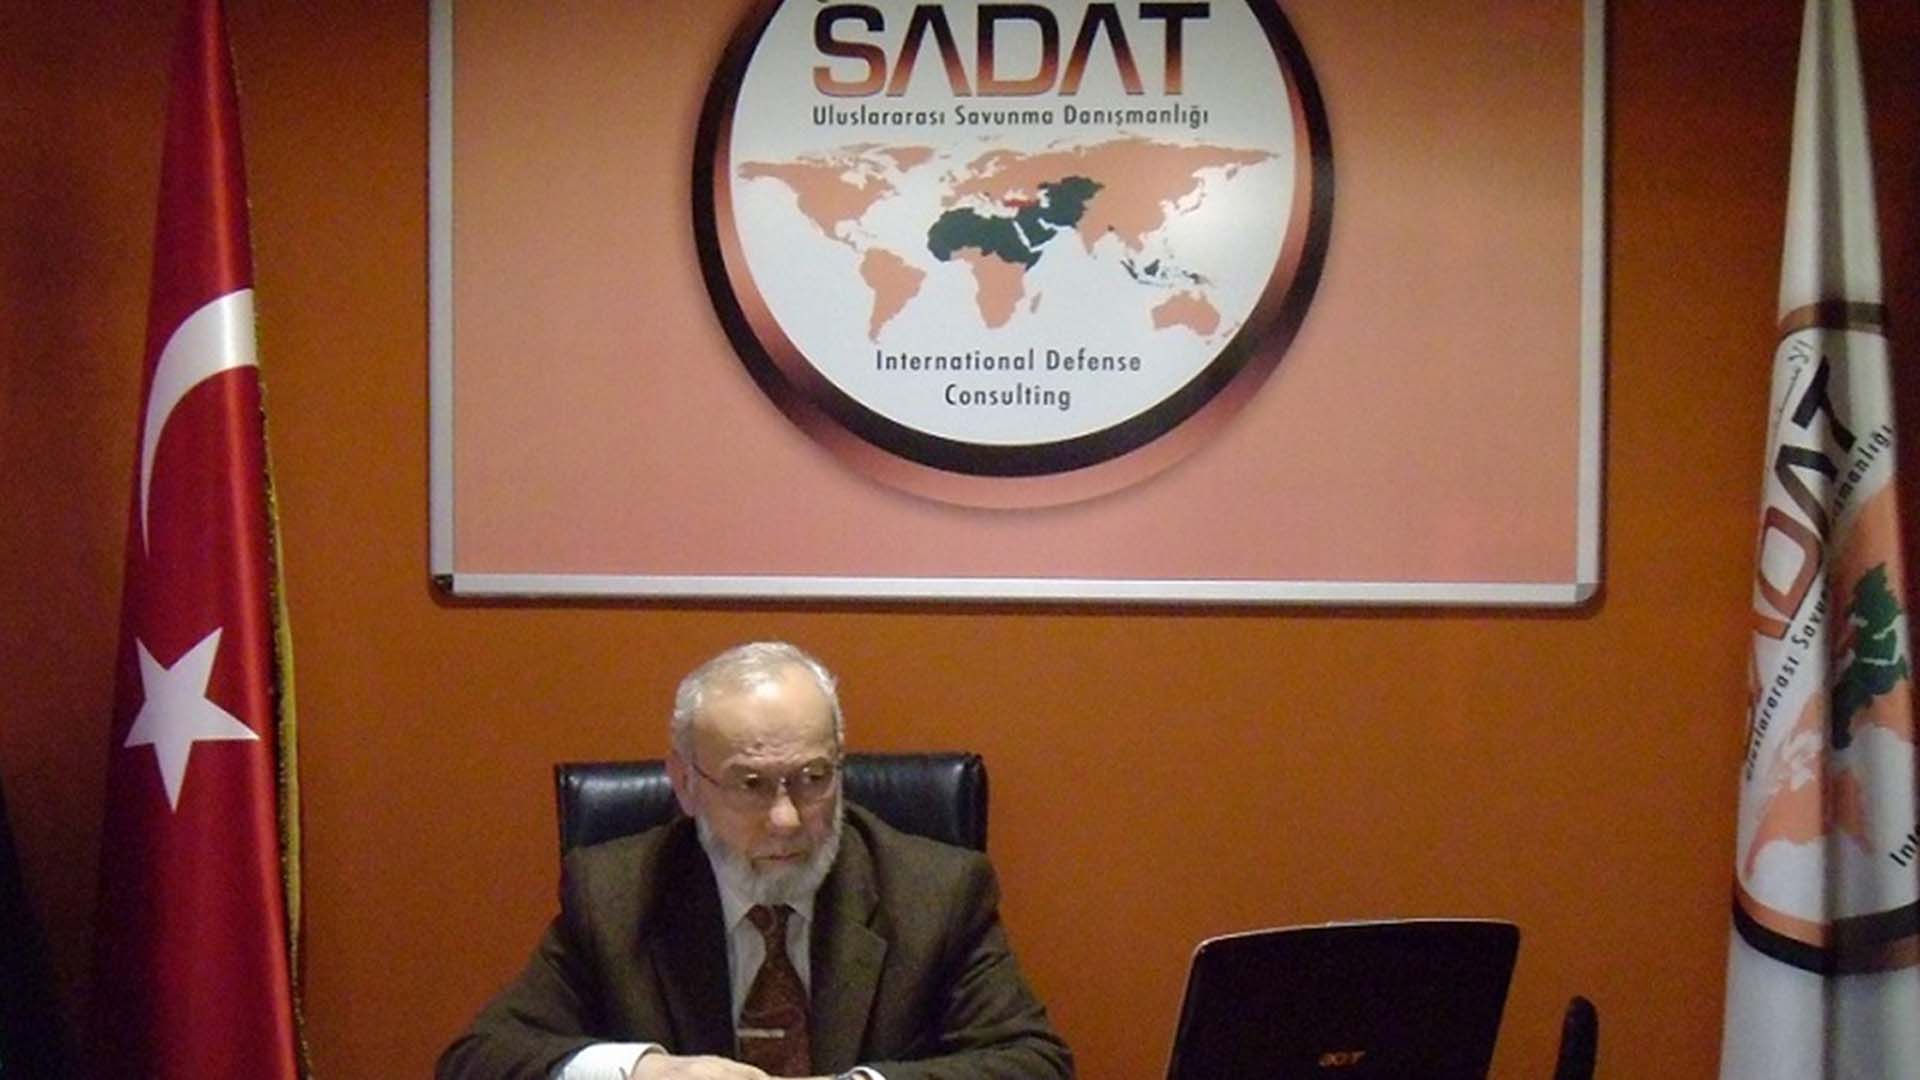 SADAT'a alınmayan Kılıçdaroğlu: "SADAT bir paramiliter kuruluştur"